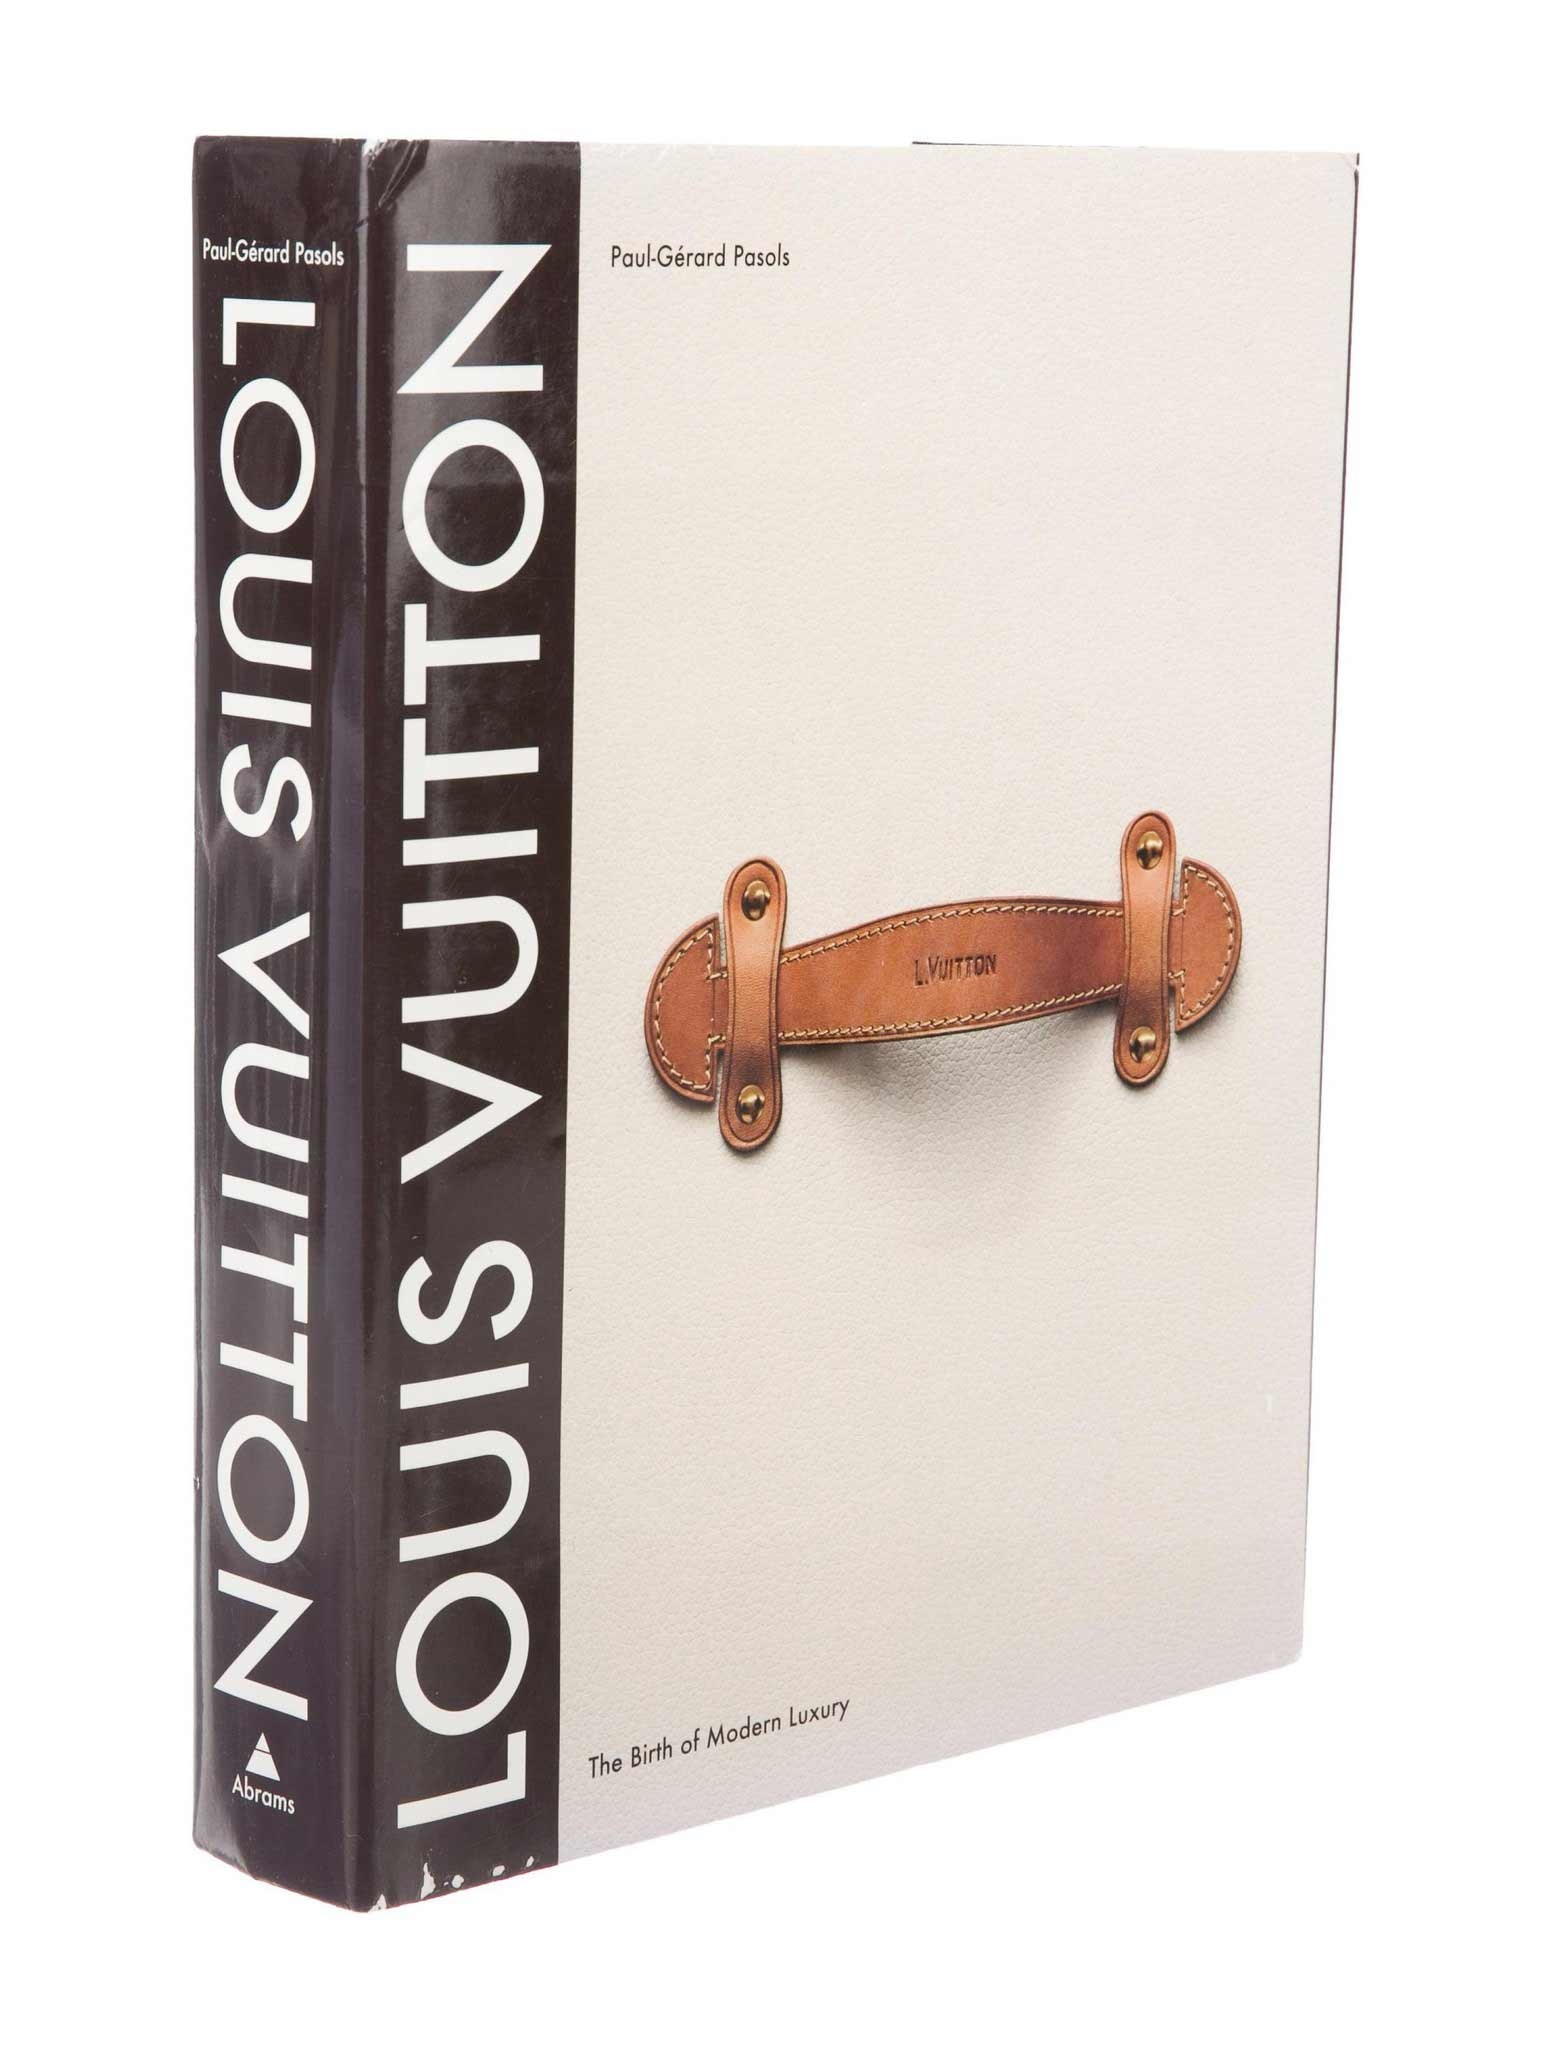 AROWONEN - Louis Vuitton livre - La Naissance du Luxe Moderne